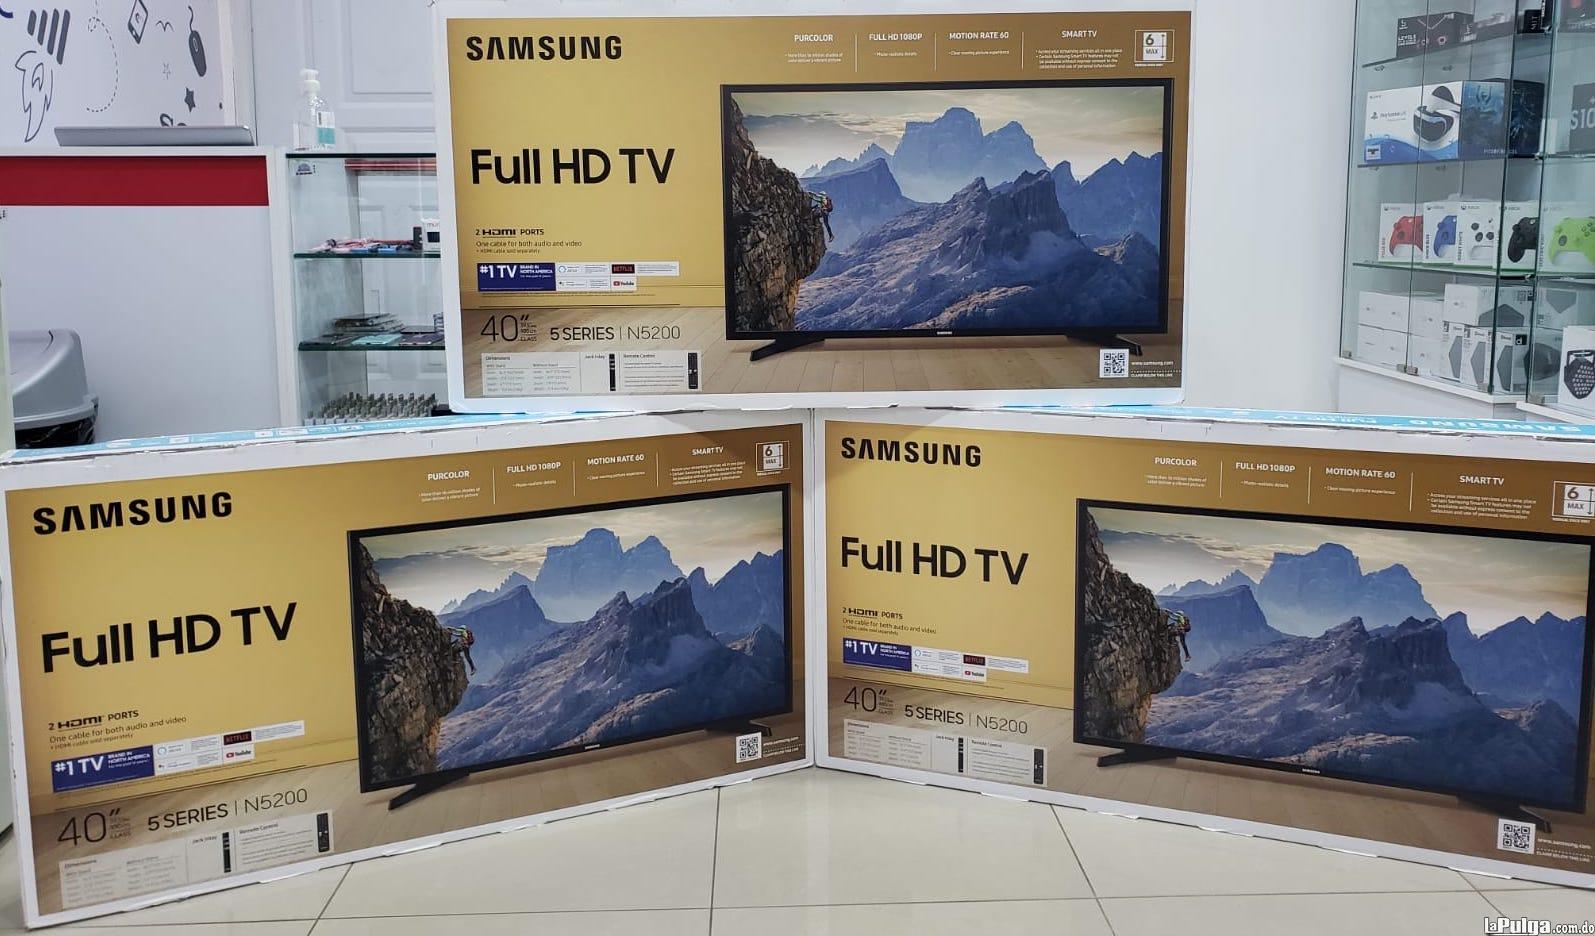 Samsung Smart tv de 40 pulgadas full hd. OFERTA